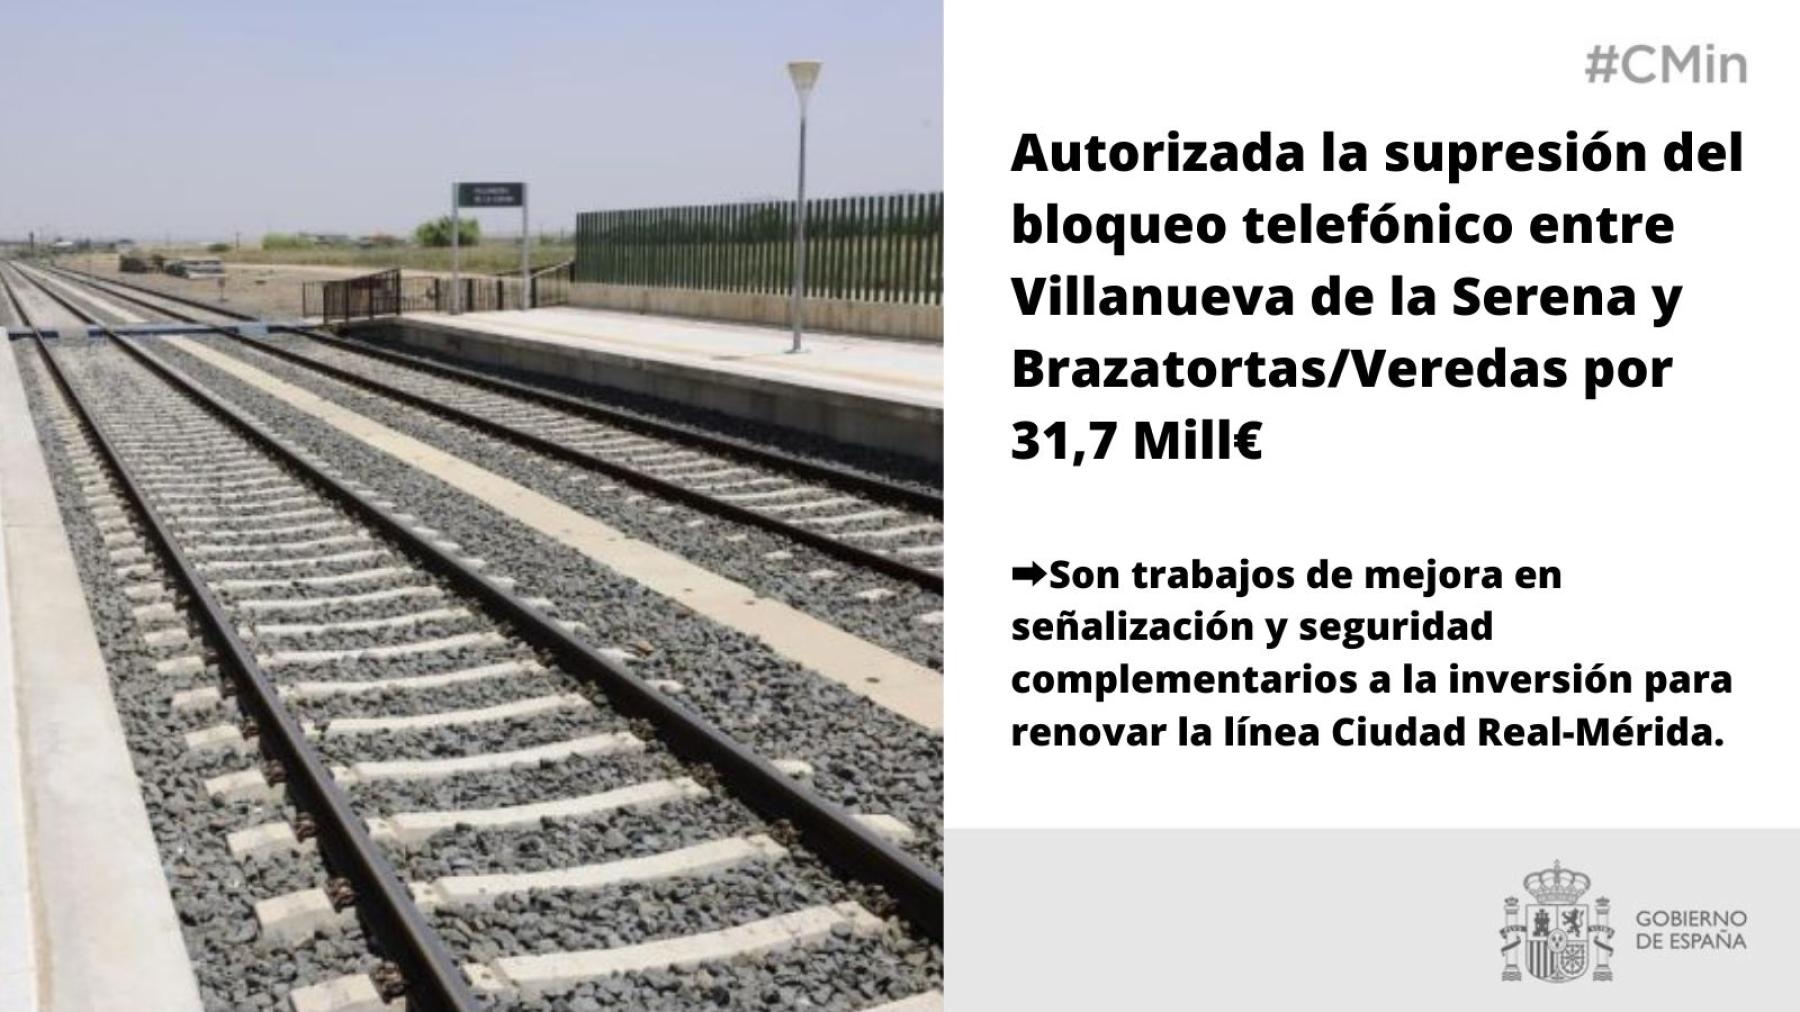 El Gobierno autoriza la supresión del bloqueo telefónico entre Villanueva de la Serena y Brazatortas/Veredas por 31,7 millones de euros